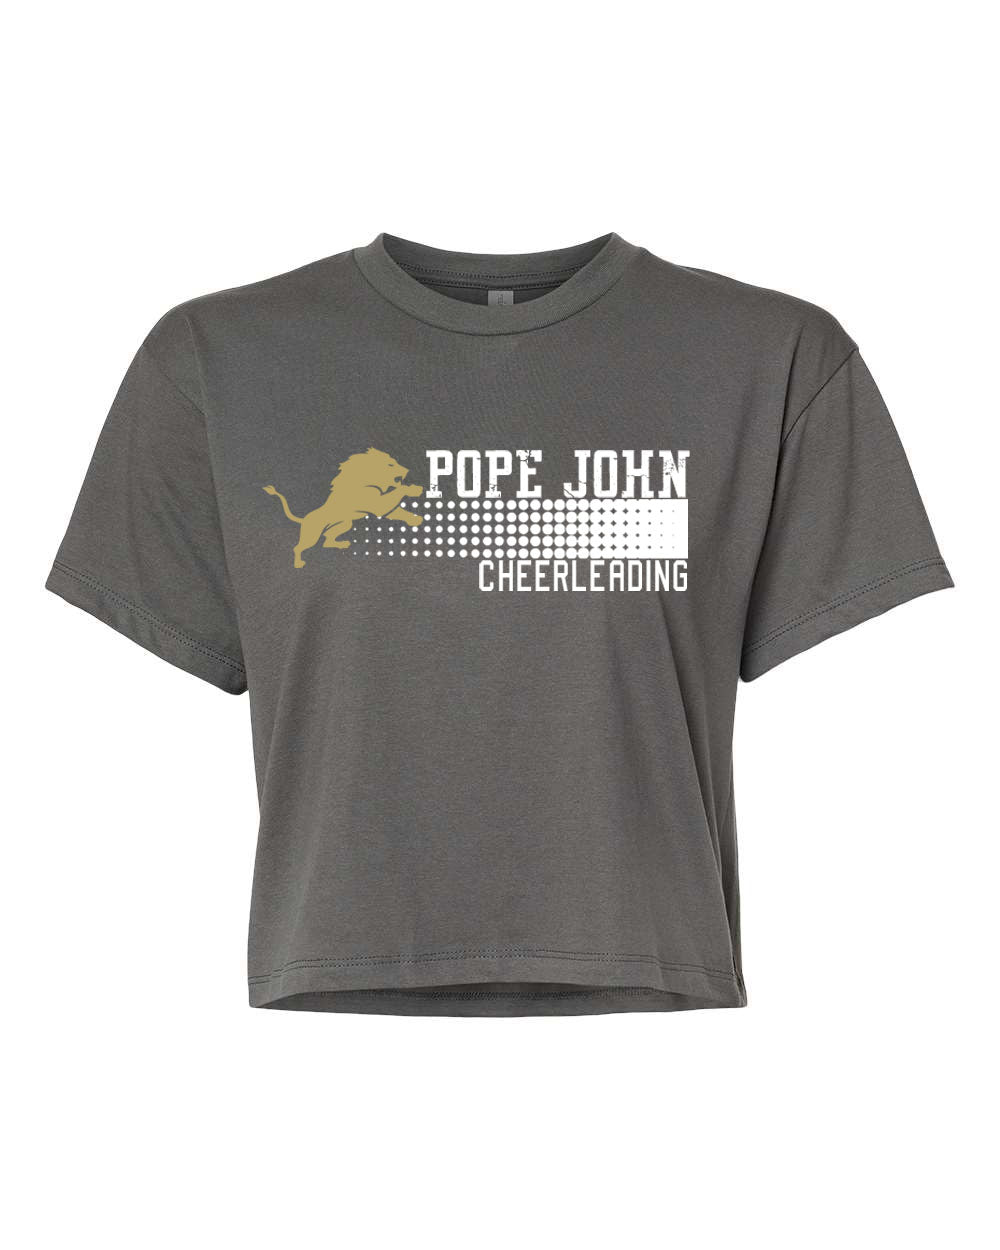 Pope John Cheer Design 4 Crop Top